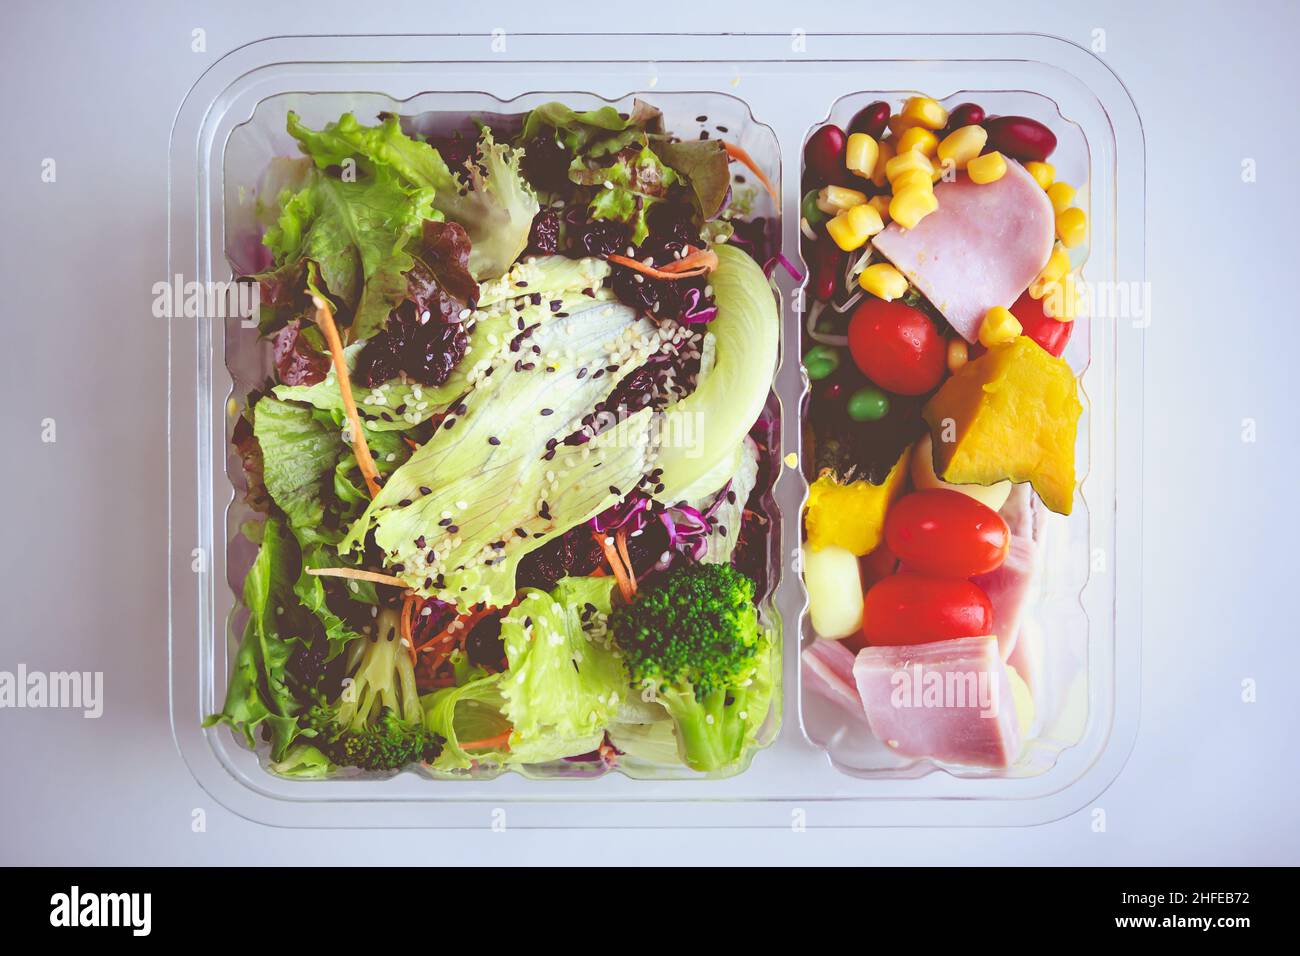 Ensalada de verduras mezcladas en envases de plástico sobre fondo blanco. Ensalada fresca para una buena salud. Concepto de alimentos saludables. Tono vintage. Foto de stock